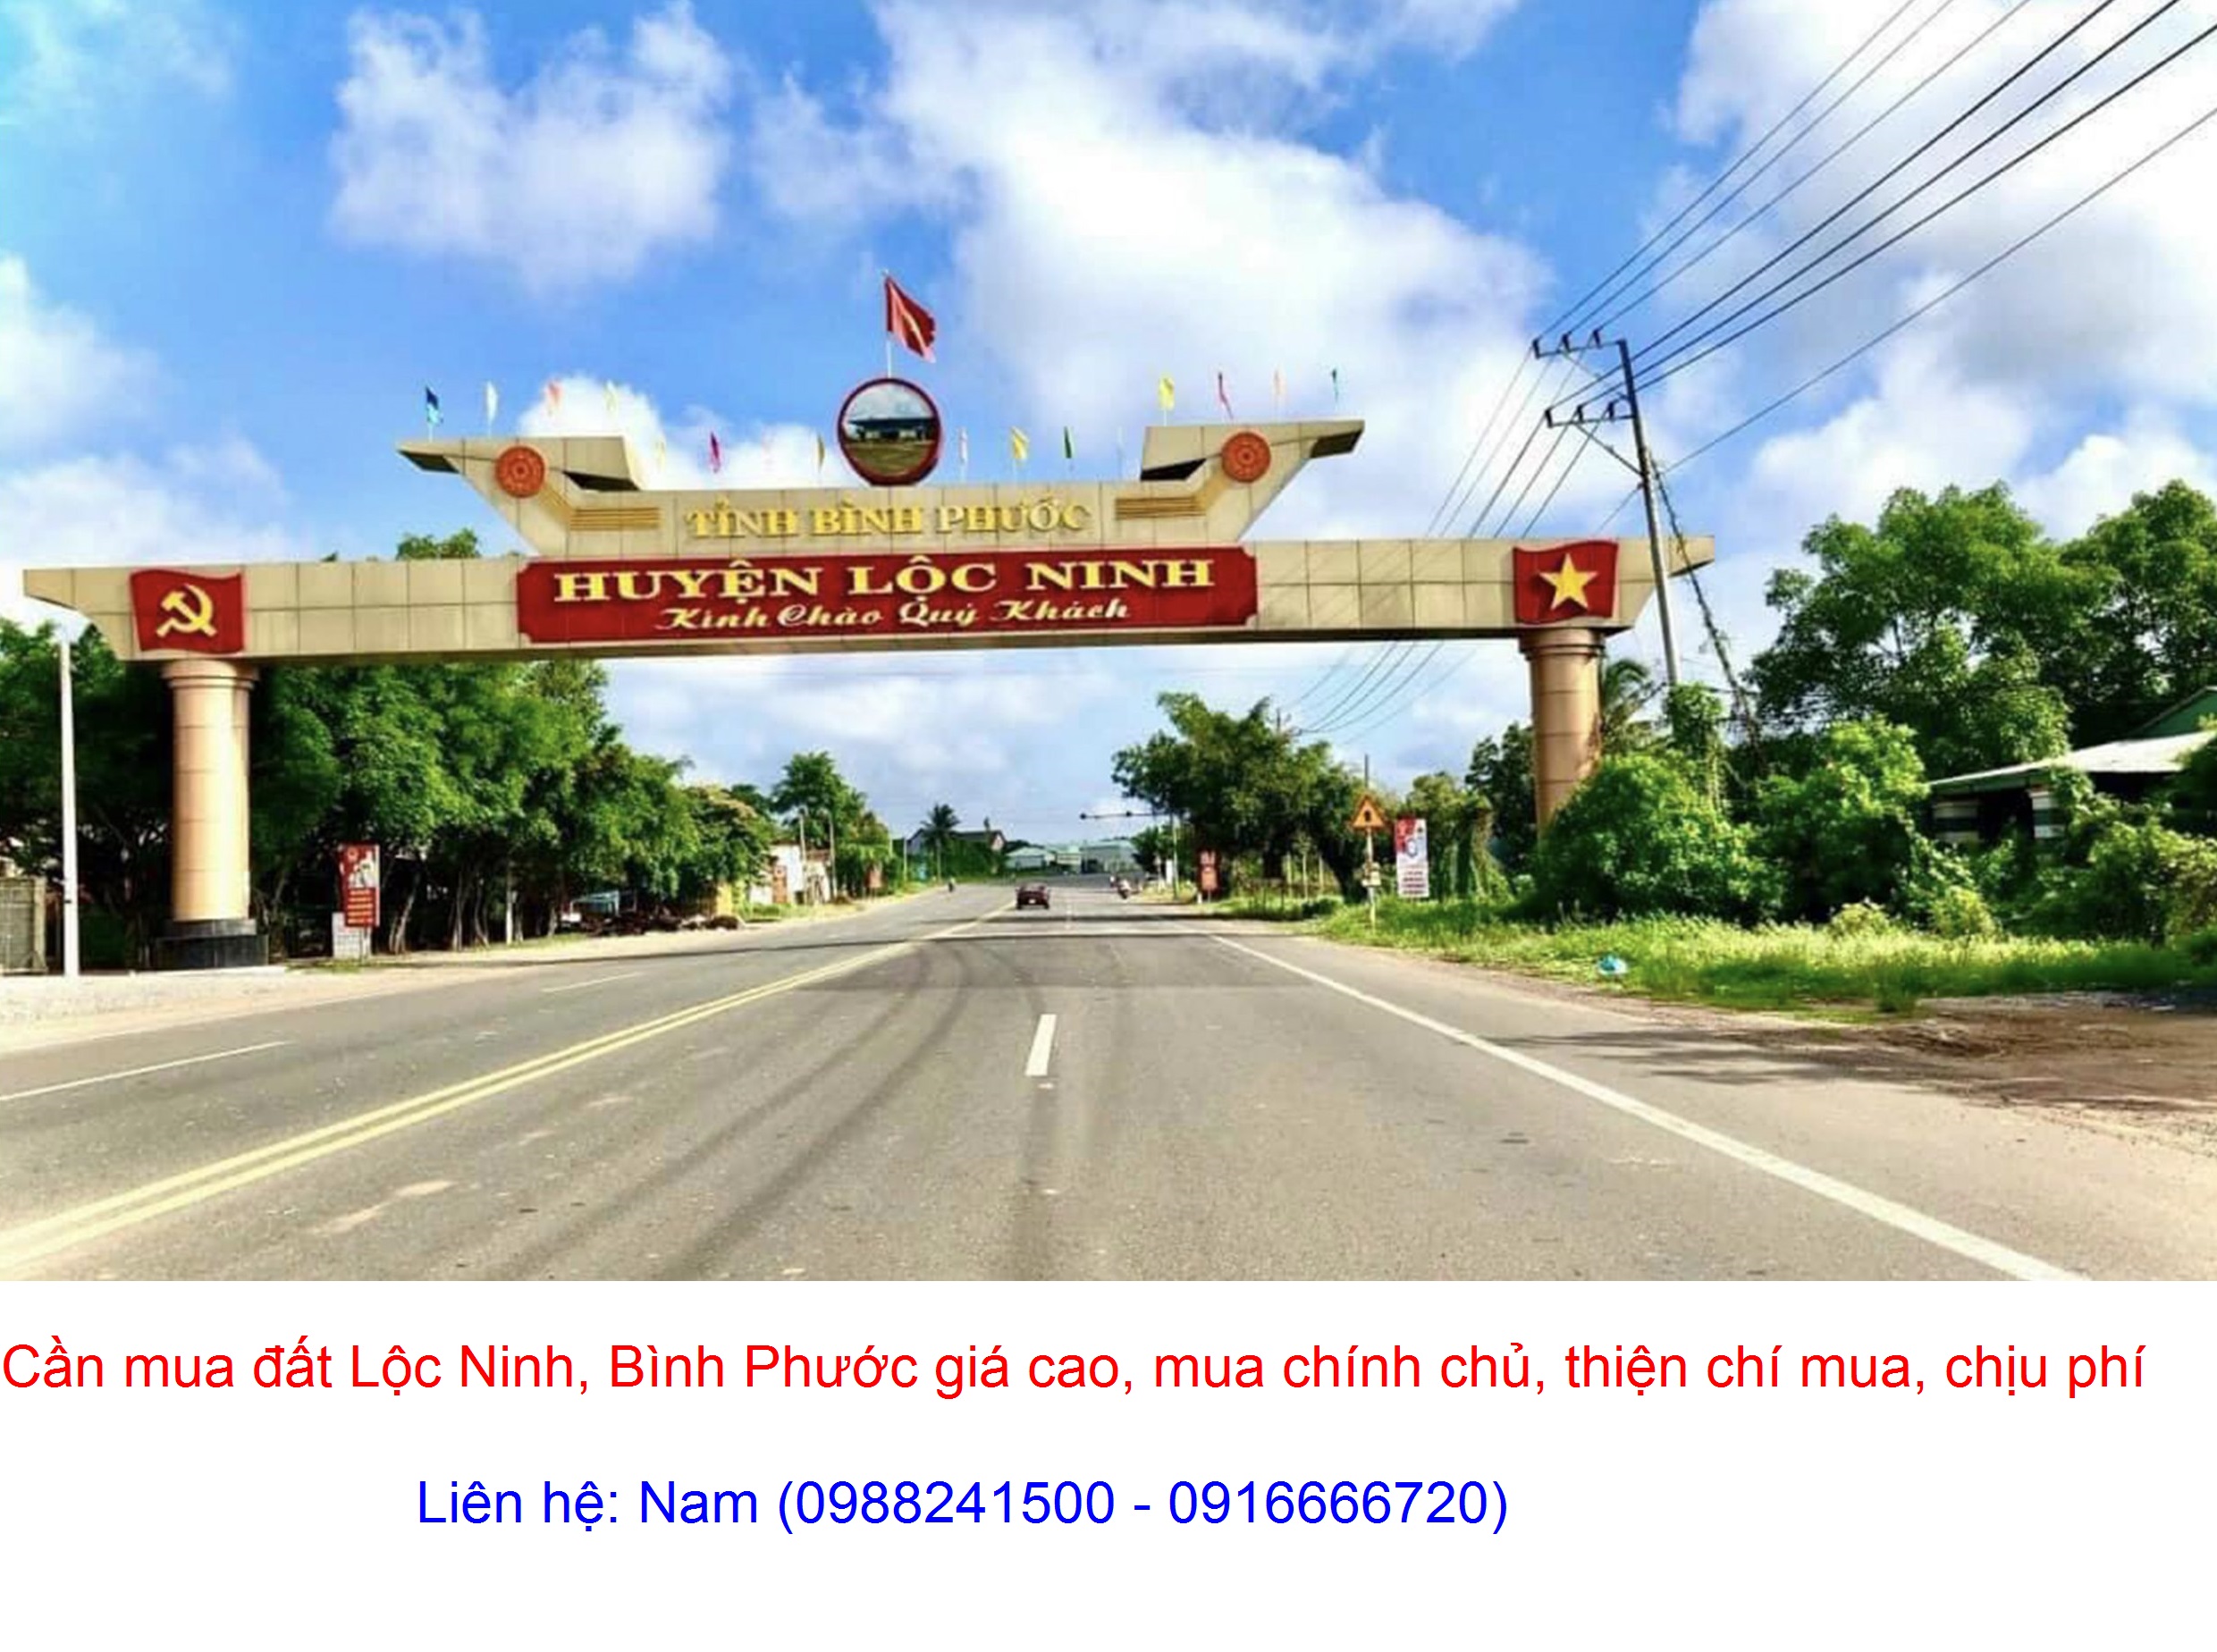 Mua đất xã Lộc Điền, huyện Lộc Ninh giá cao, mua chính chủ